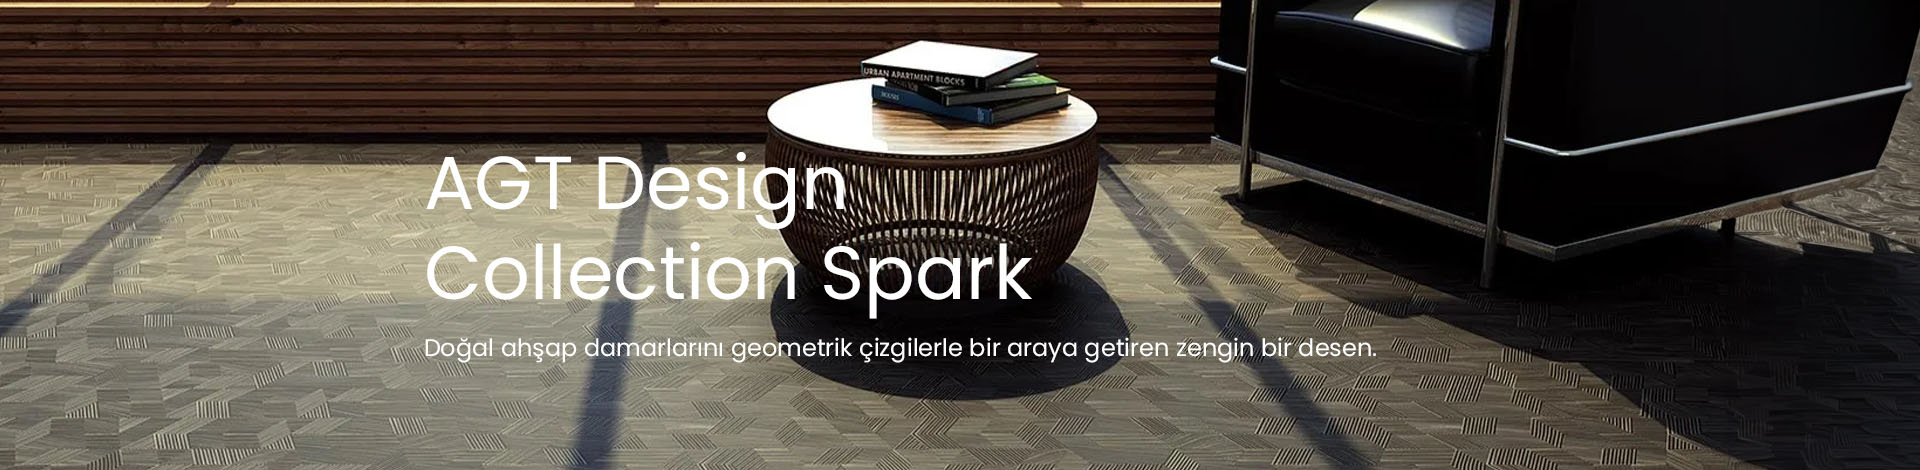 Agt Parke Desing Collection Spark